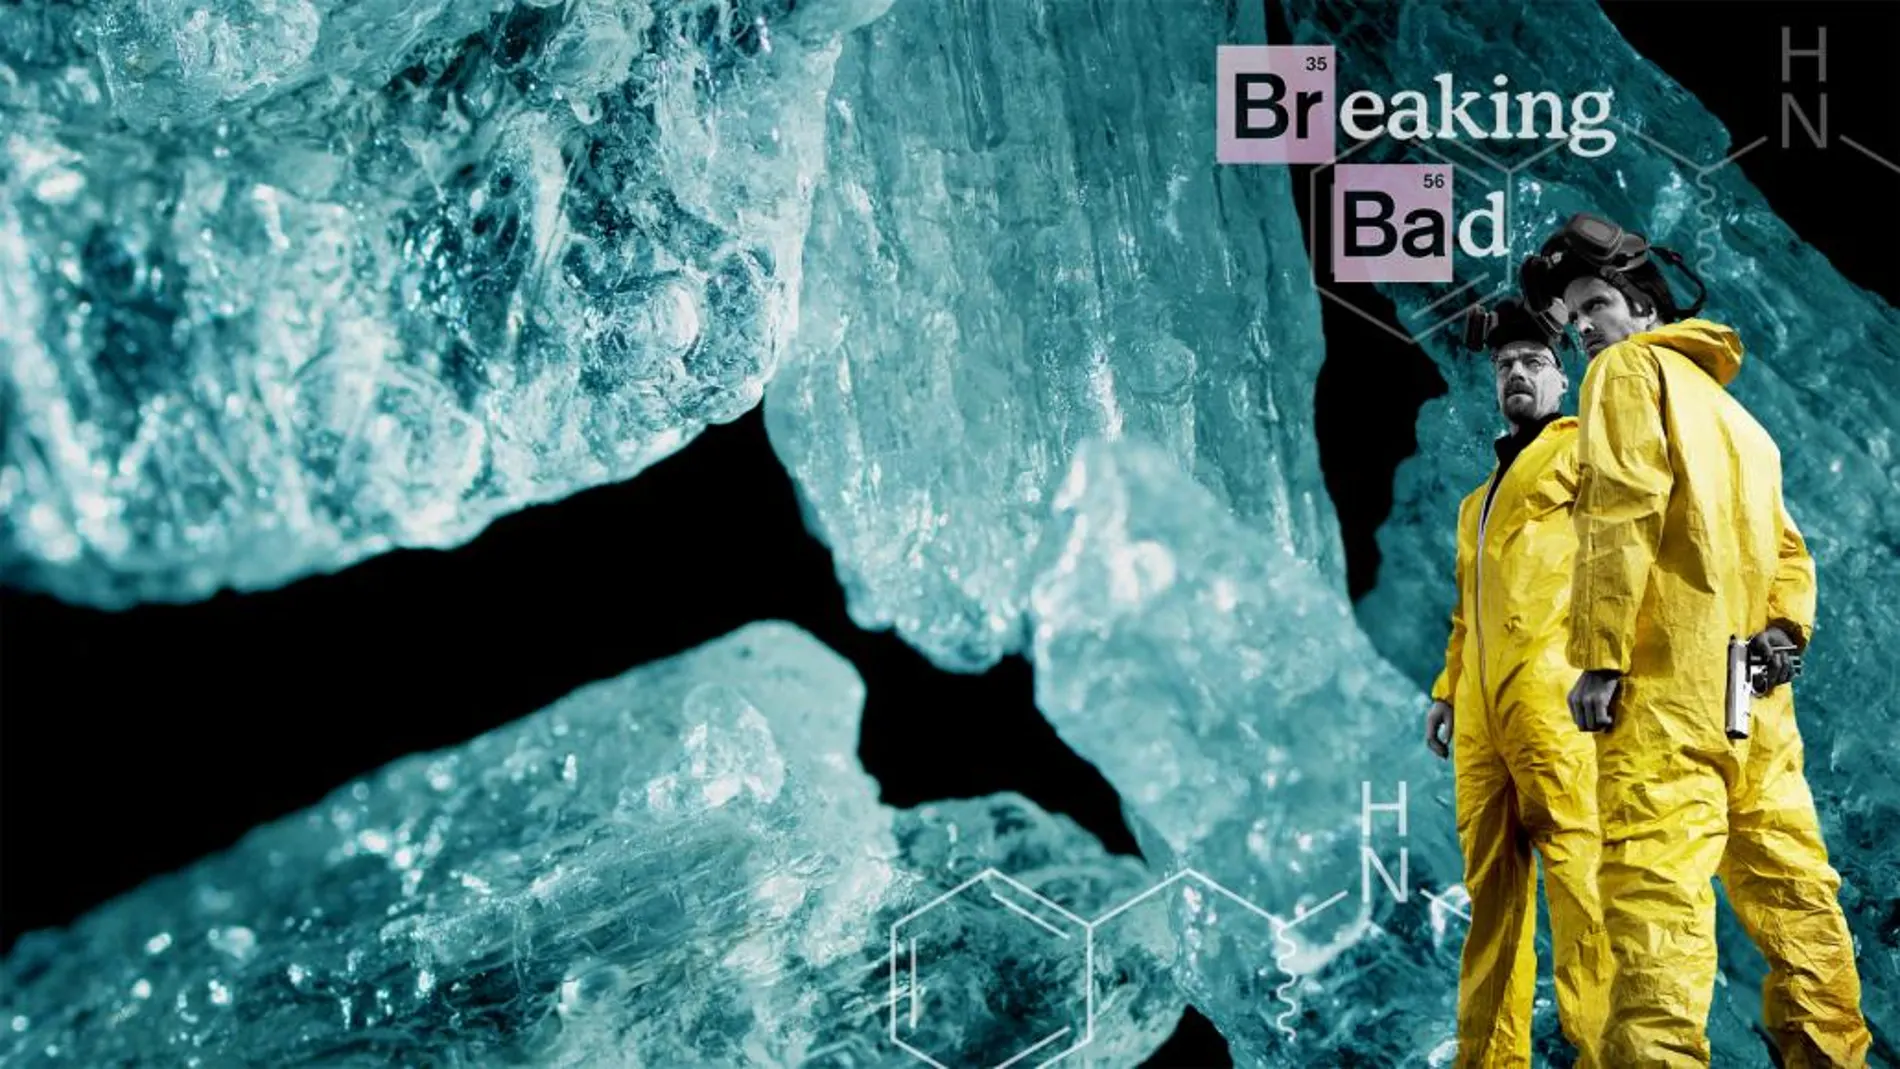 La exitosa serie "Breaking Bad", versaba sobre un profesor de química enfermo de cáncer que fabricaba su propia metaanfetamina para dejar dinero en herencia a su familia